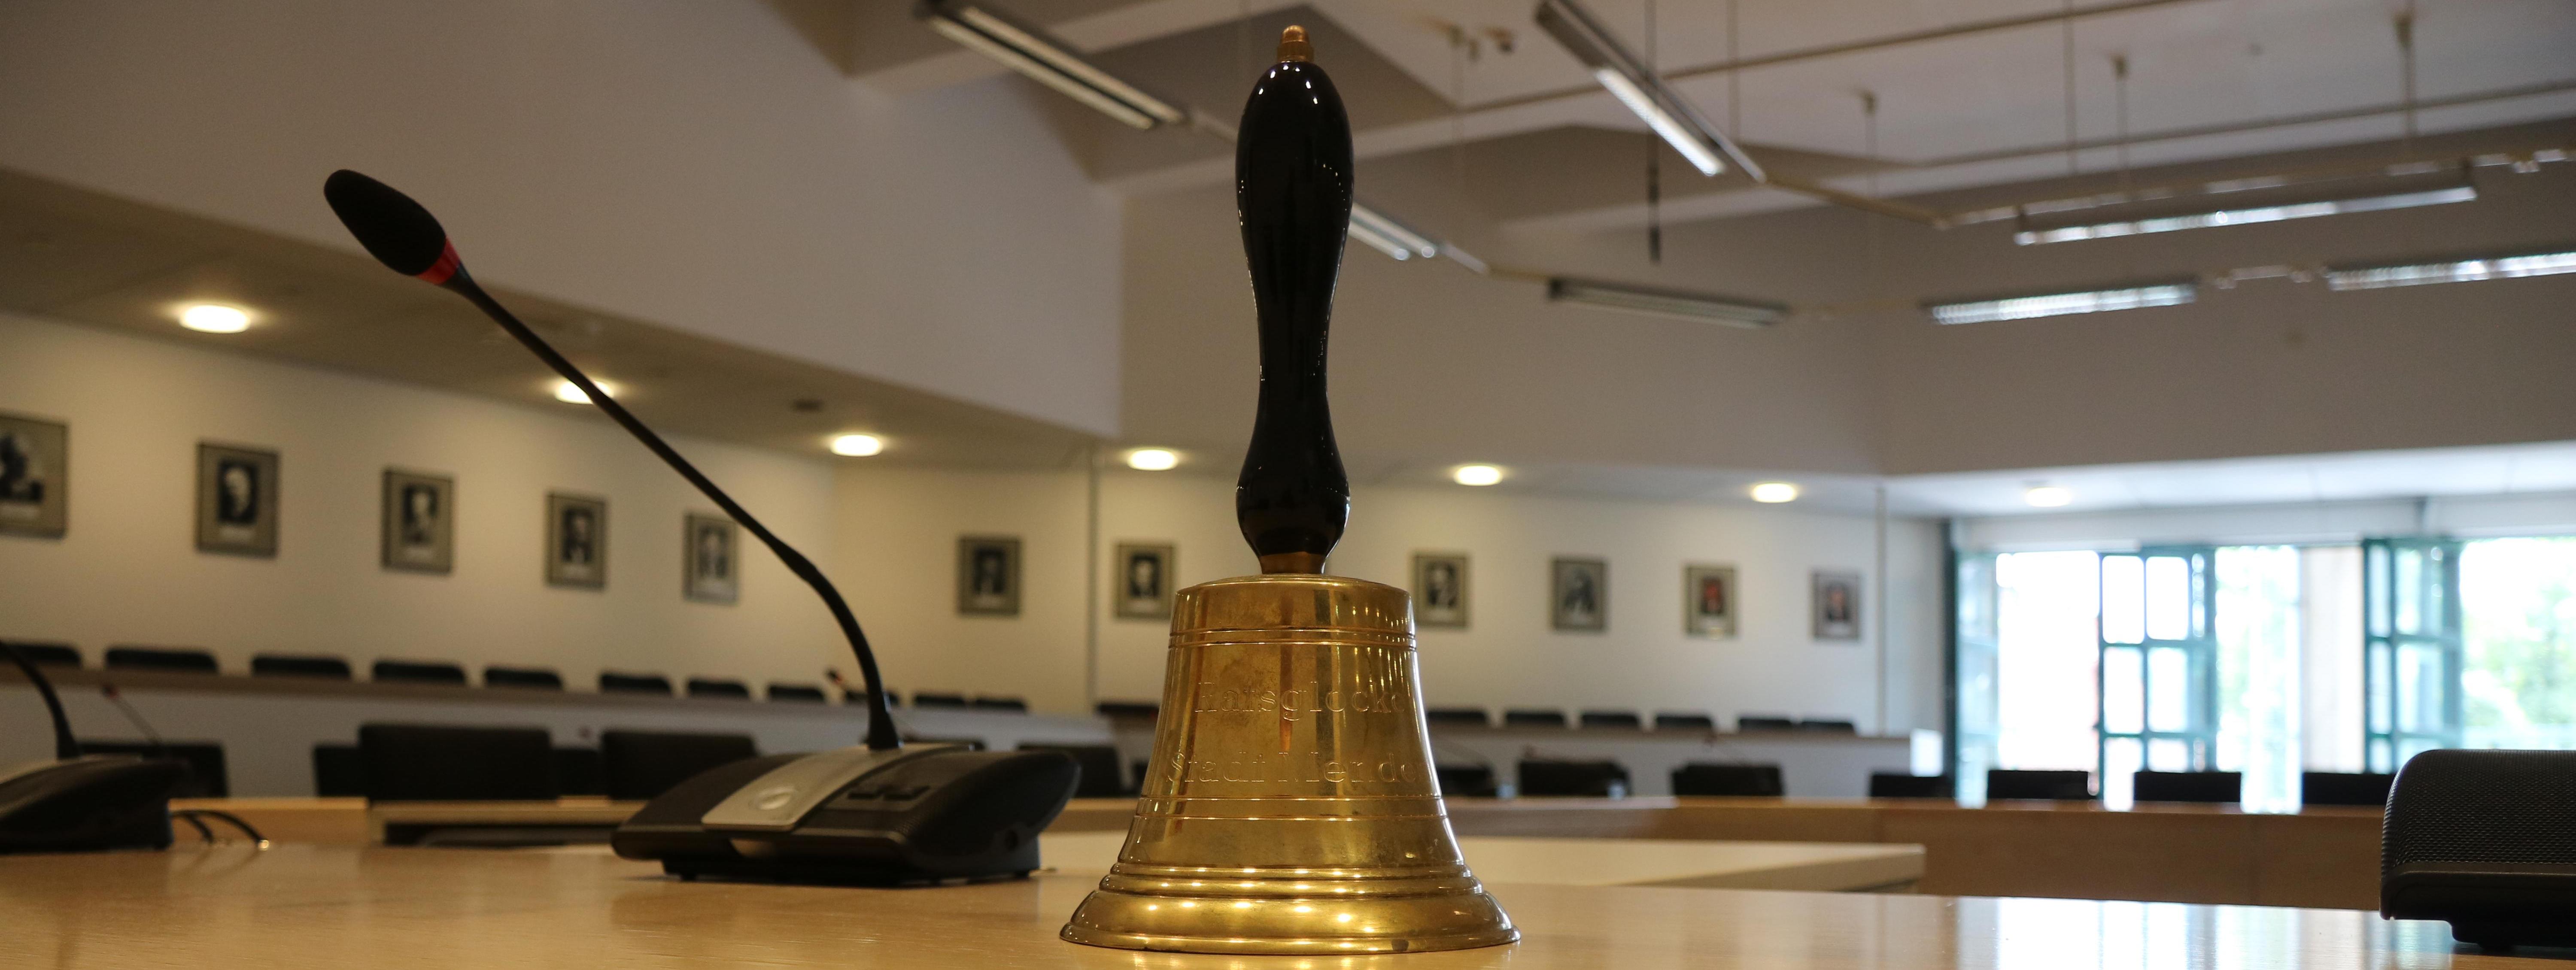 Die Glocke des Bürgermeisters steht neben dem Mikrophon auf einem Tisch. Mit dieser Glocke kann sich der Bürgermeister Gehör verschaffen, sollte es in einer Sitzung zu Laut werden.